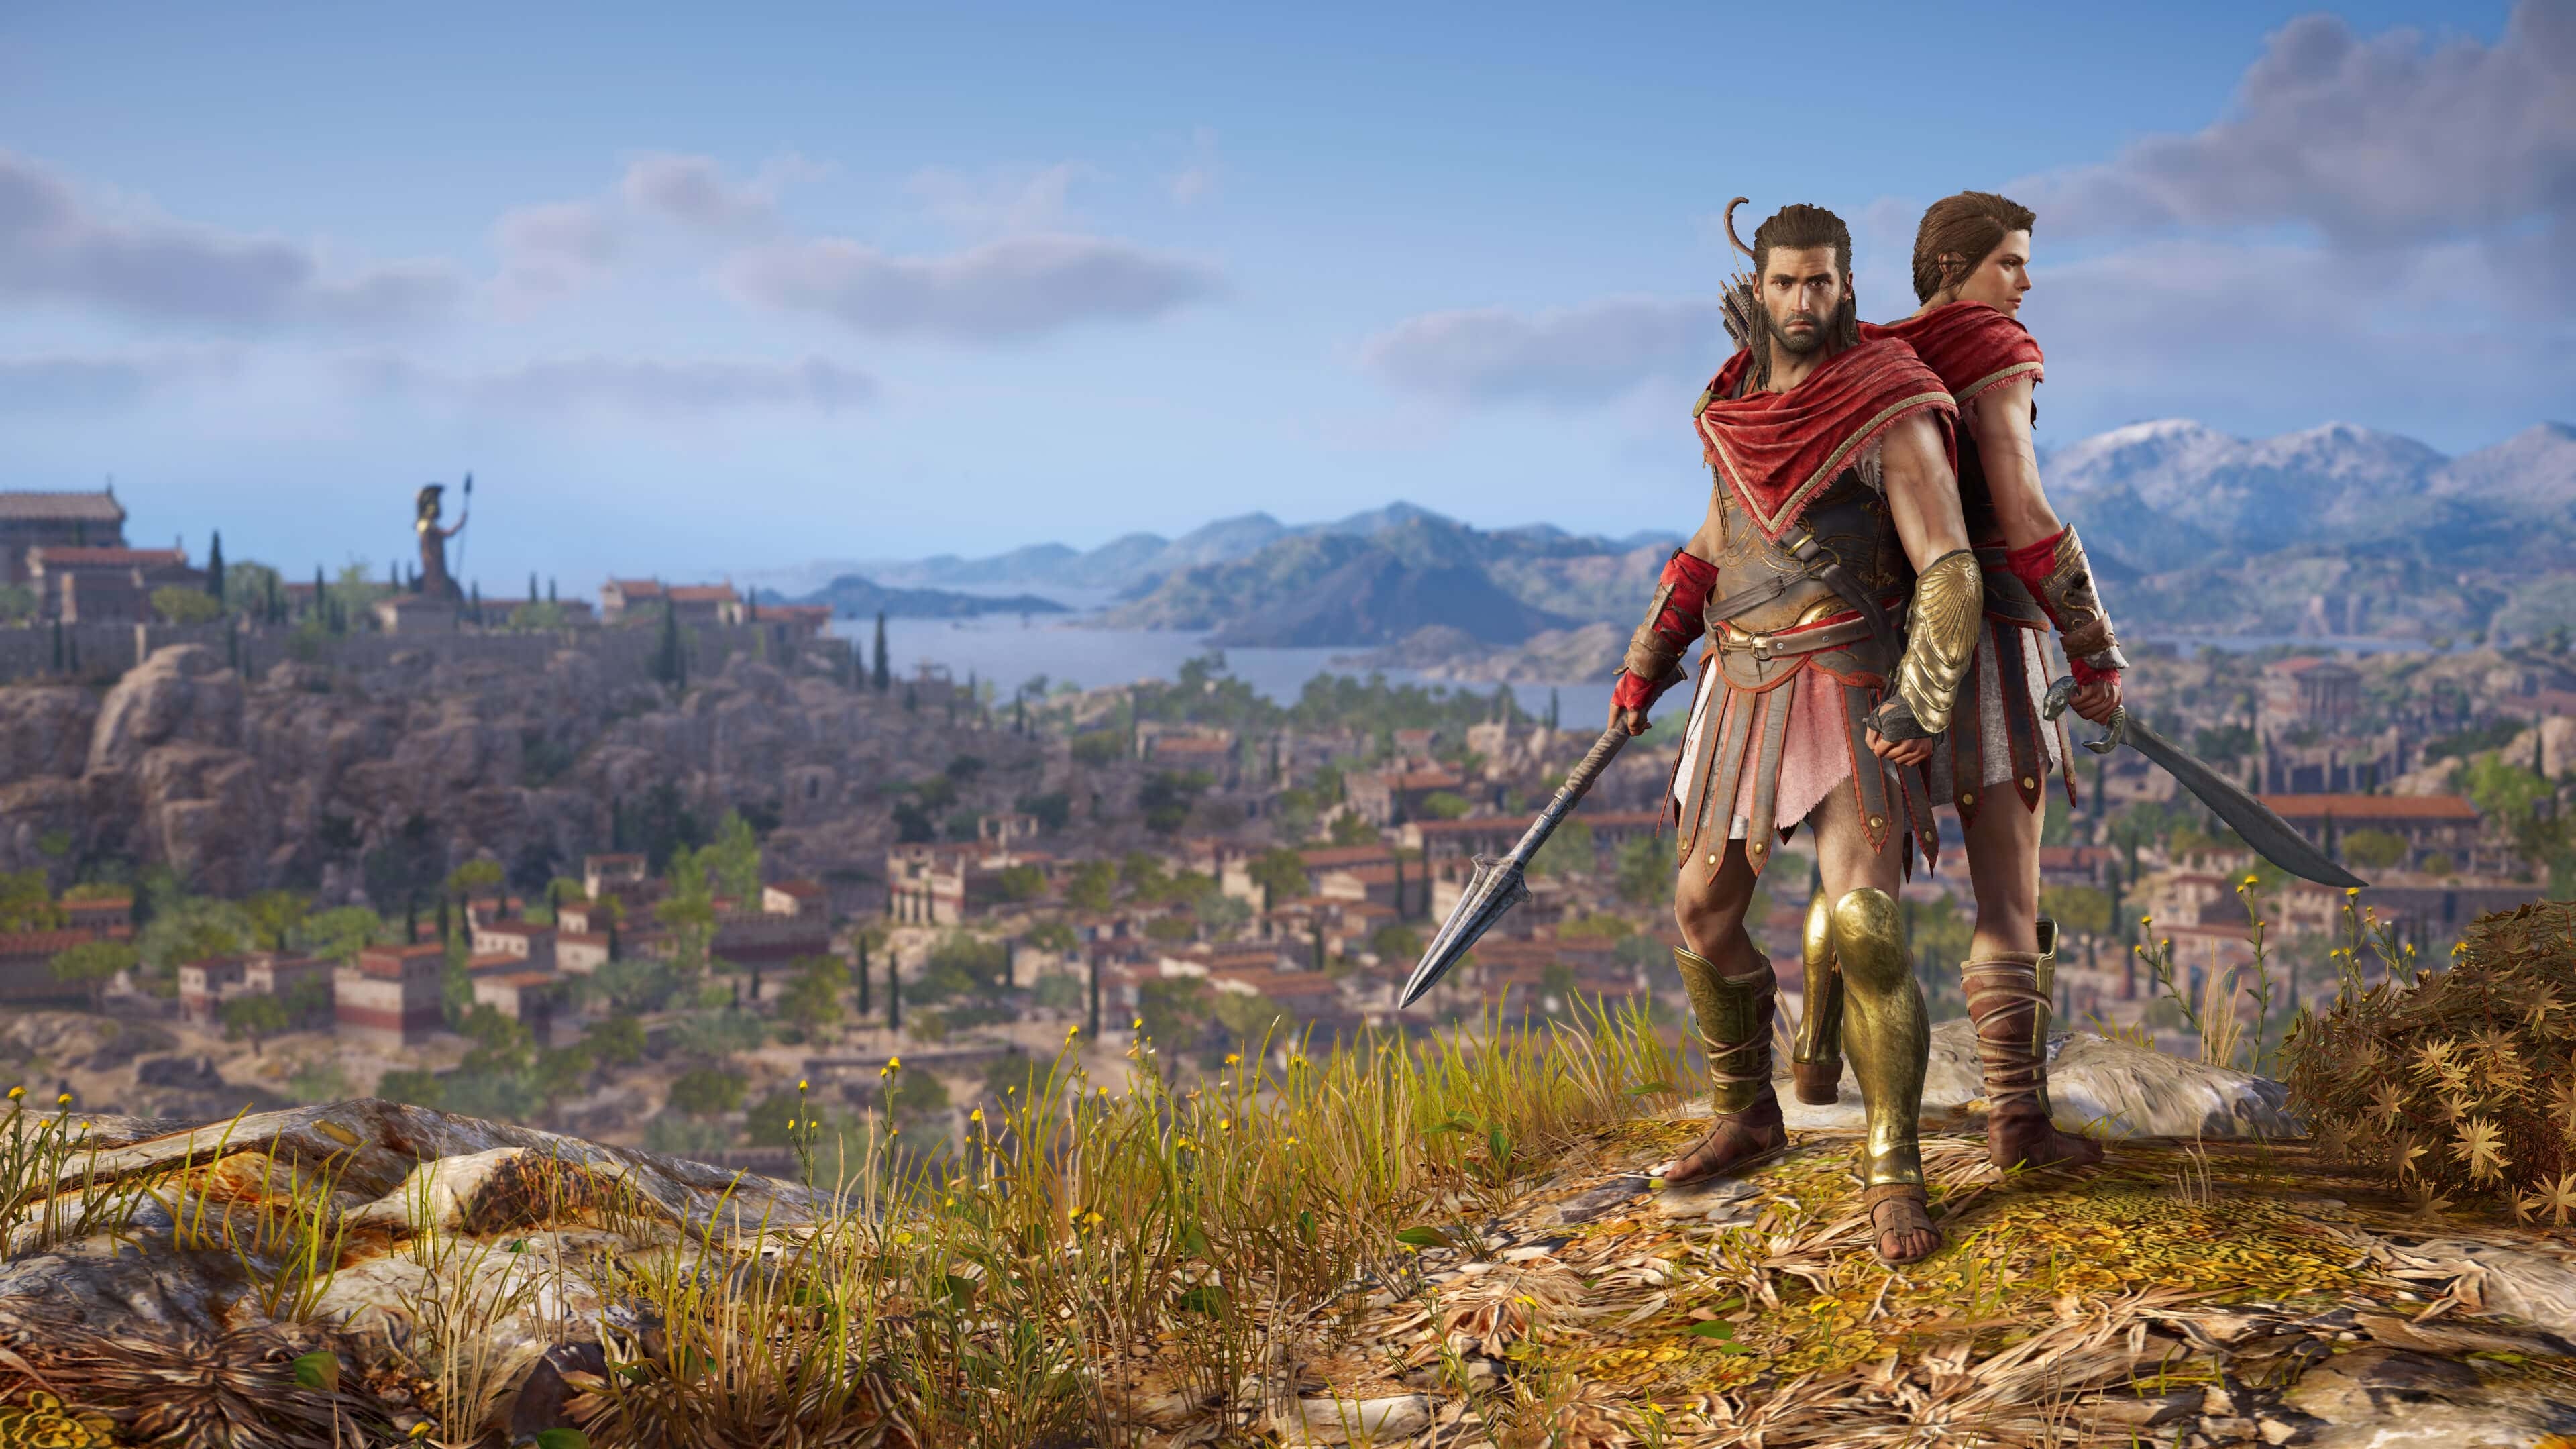 Видео: ложные пророчества в премьерном трейлере Assassin's Creed Odyssey